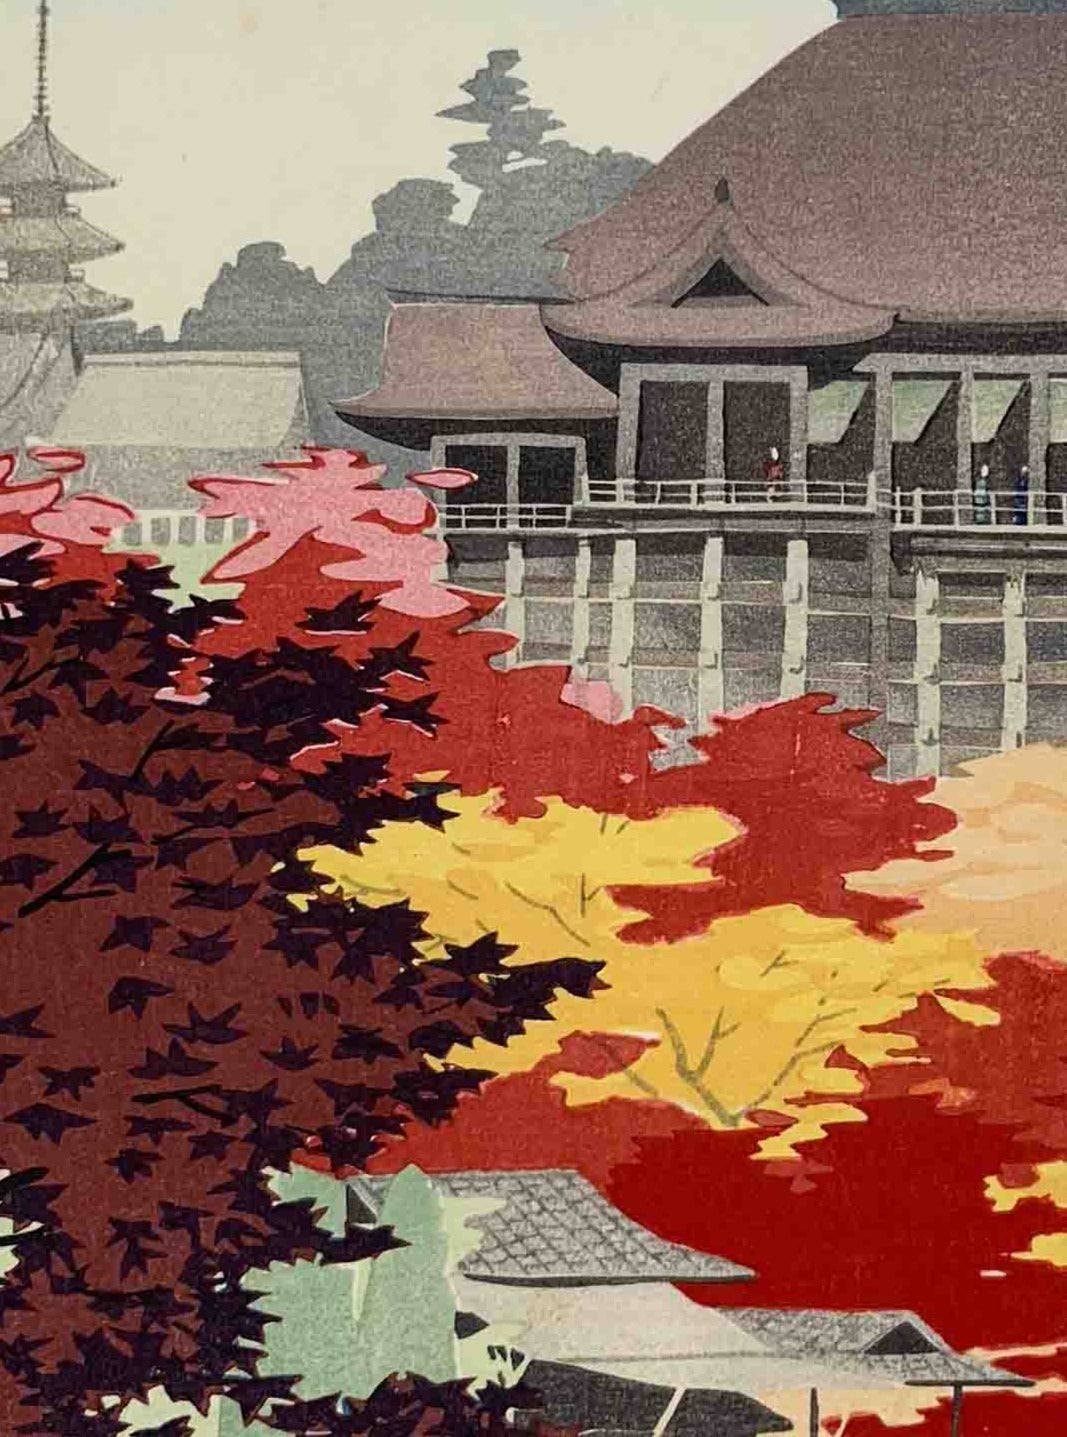 estampe japonaise de kawai kenji kiyomizu a l'automne, gros plan sur les érables rouges et jaunes